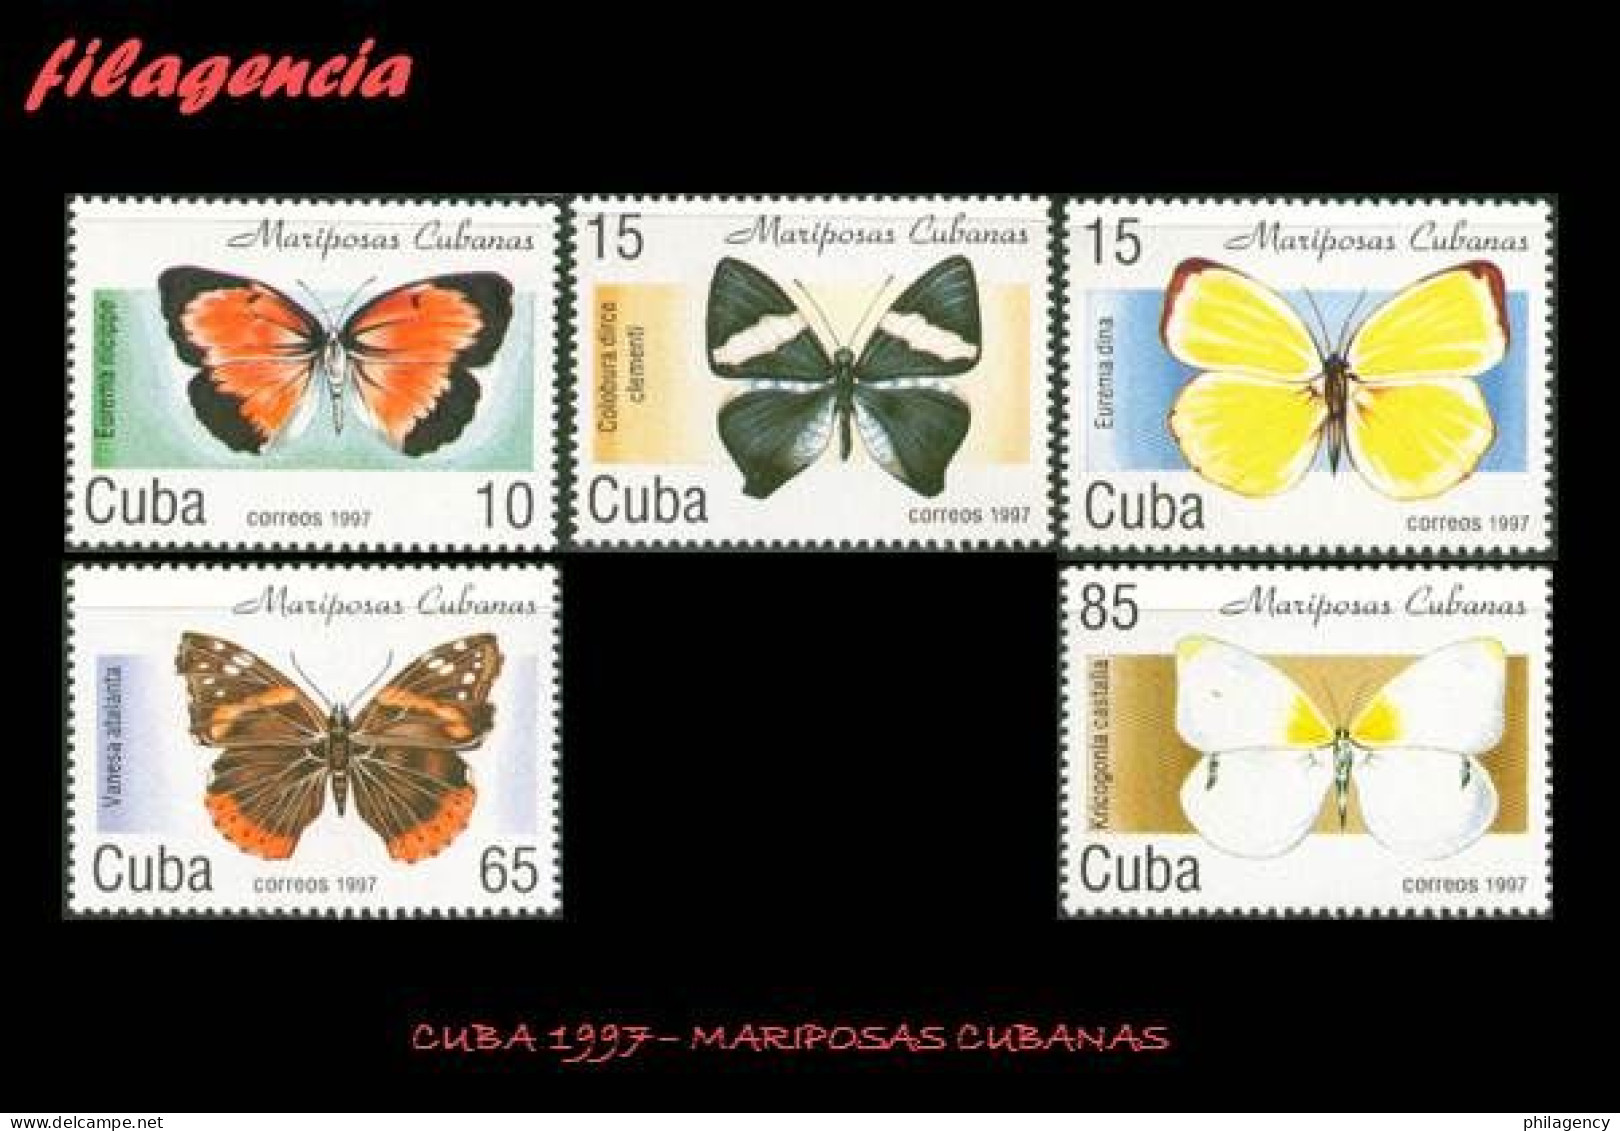 CUBA MINT. 1997-11 MARIPOSAS CUBANAS - Unused Stamps